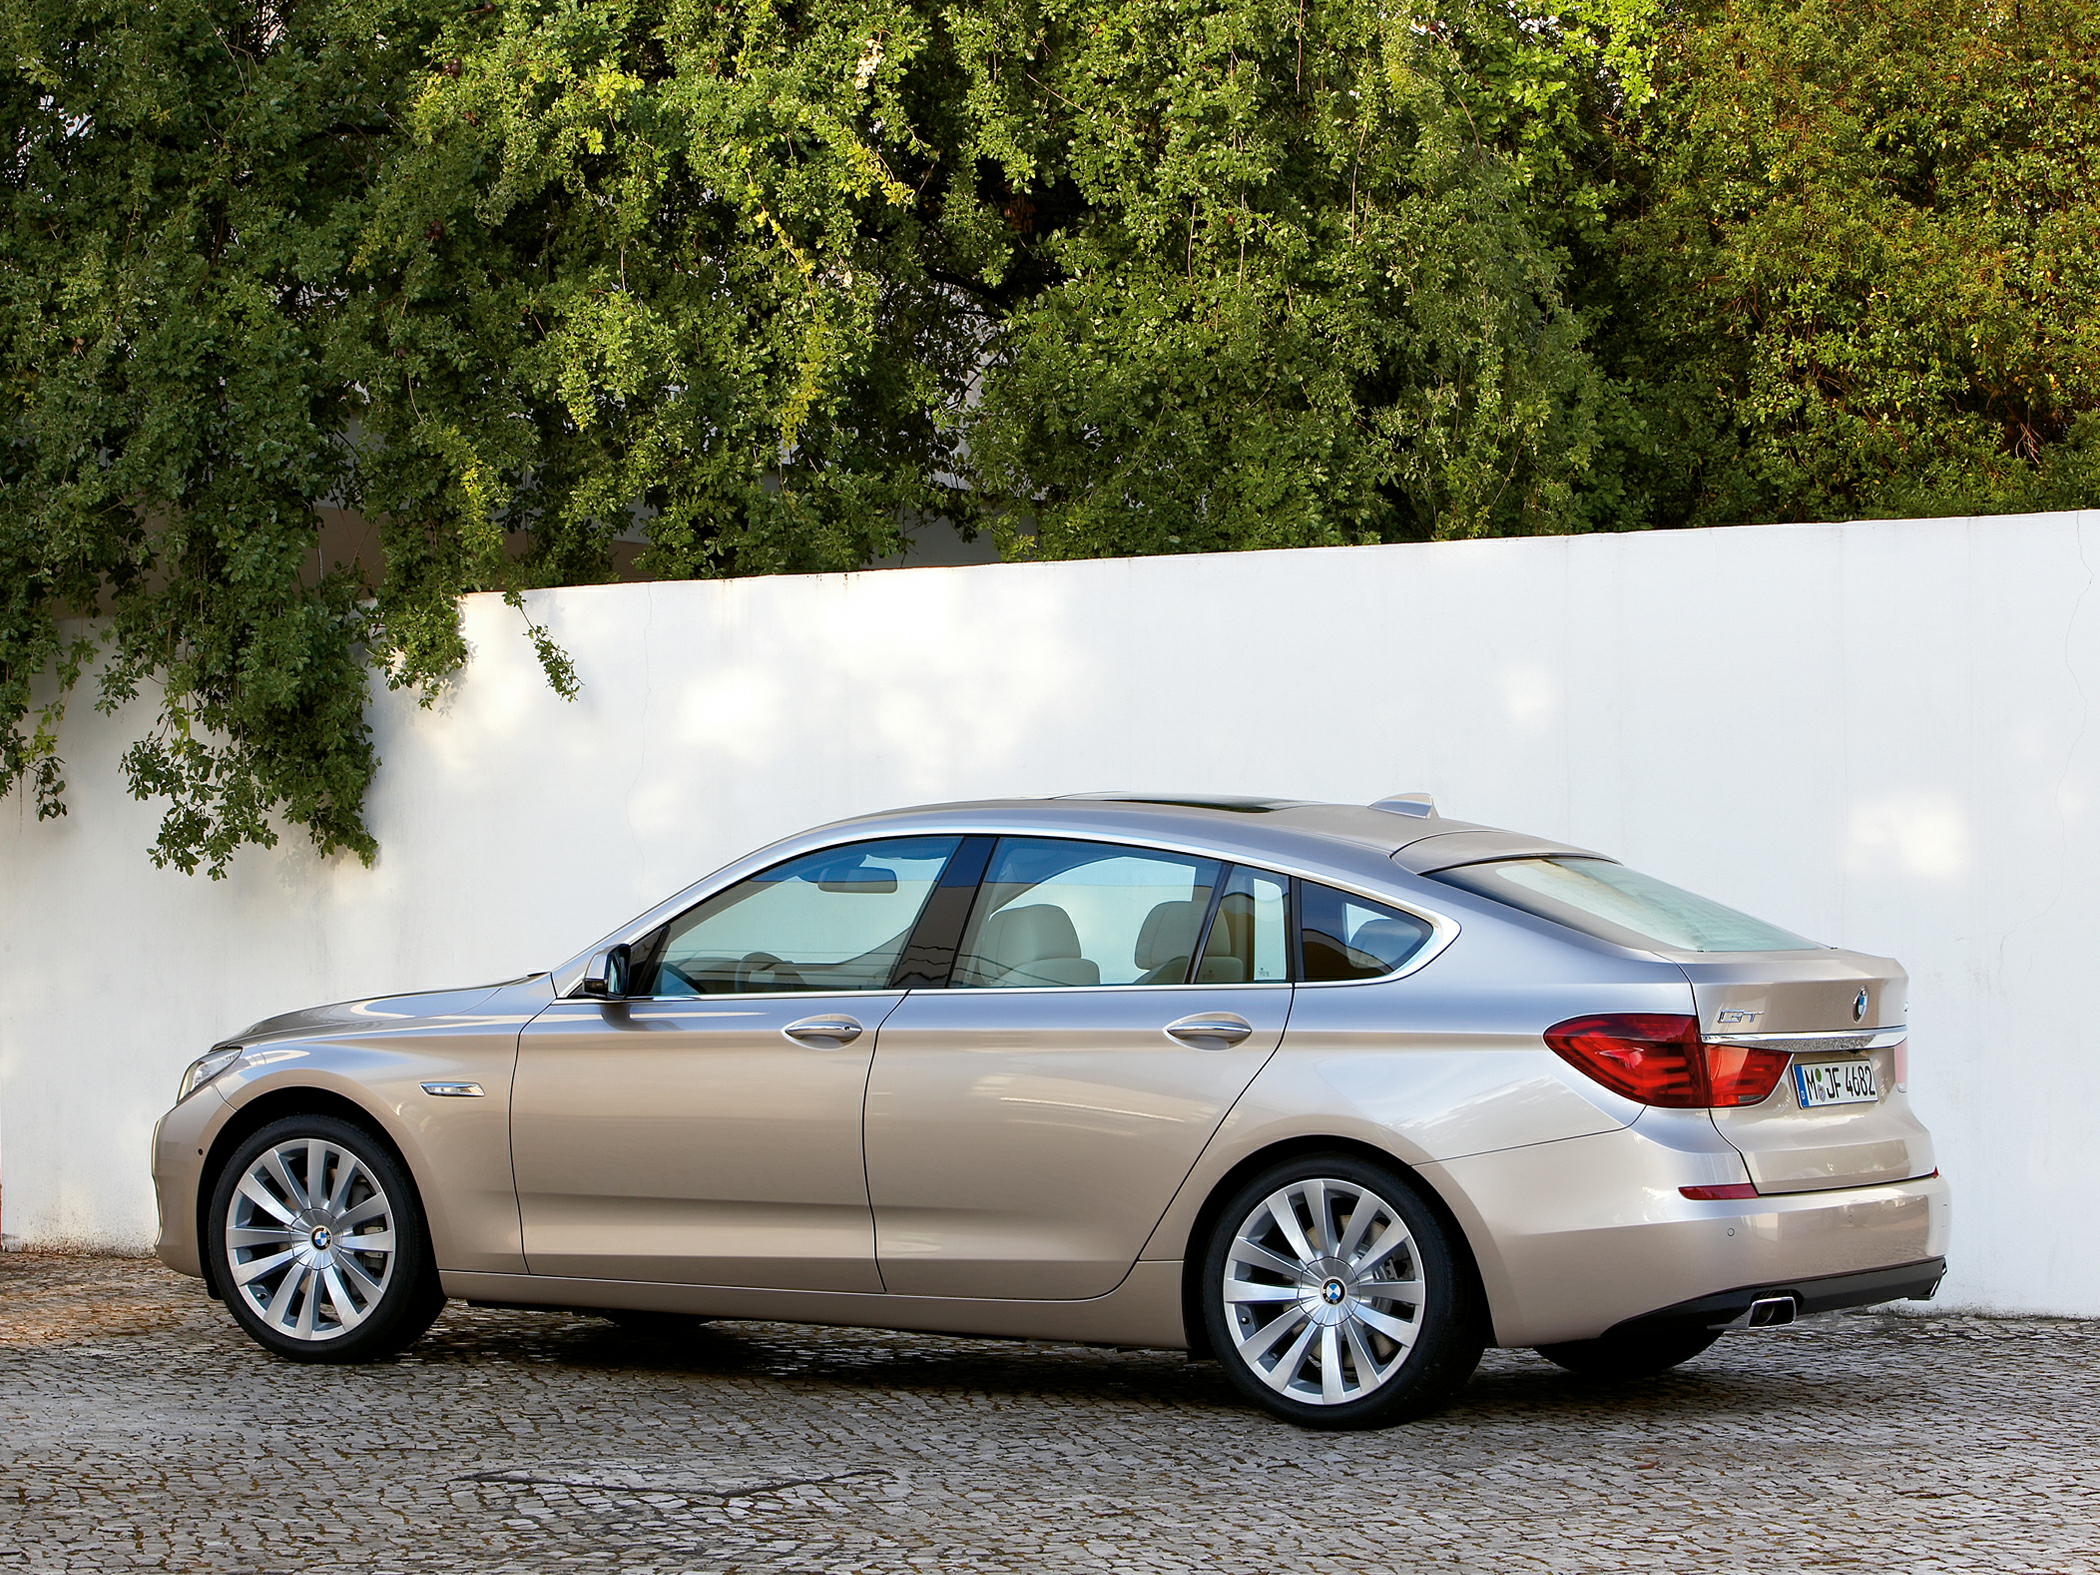 2011 BMW 535 Gran Turismo